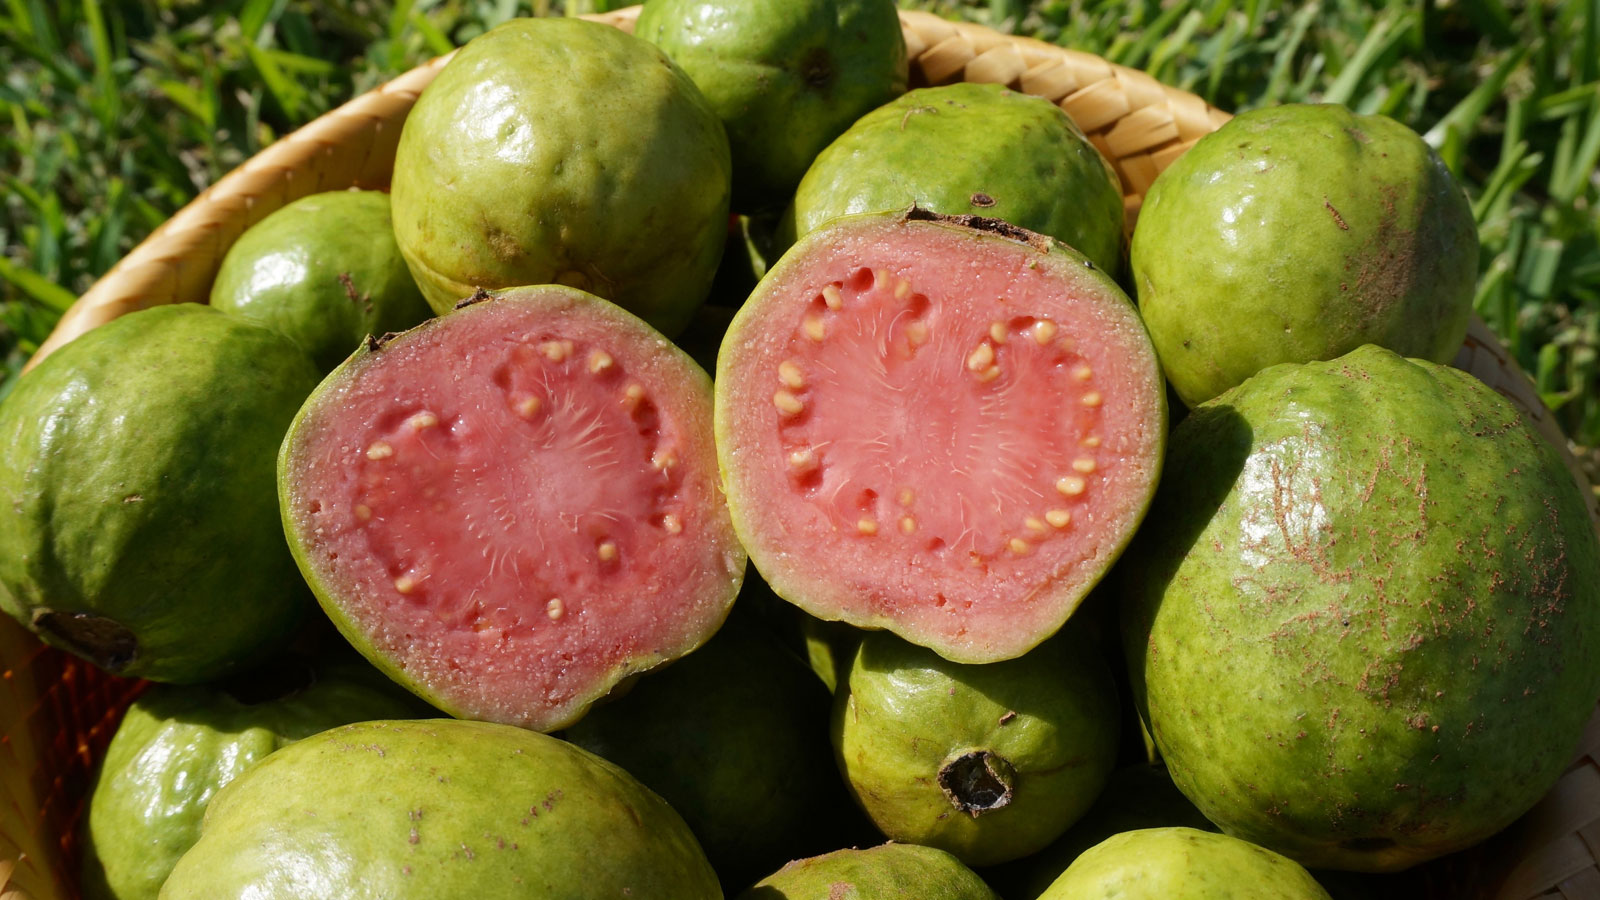 Hem gençlik iksiri hem şifa deposu! Guava meyvesi faydaları ile şaşırtıyor